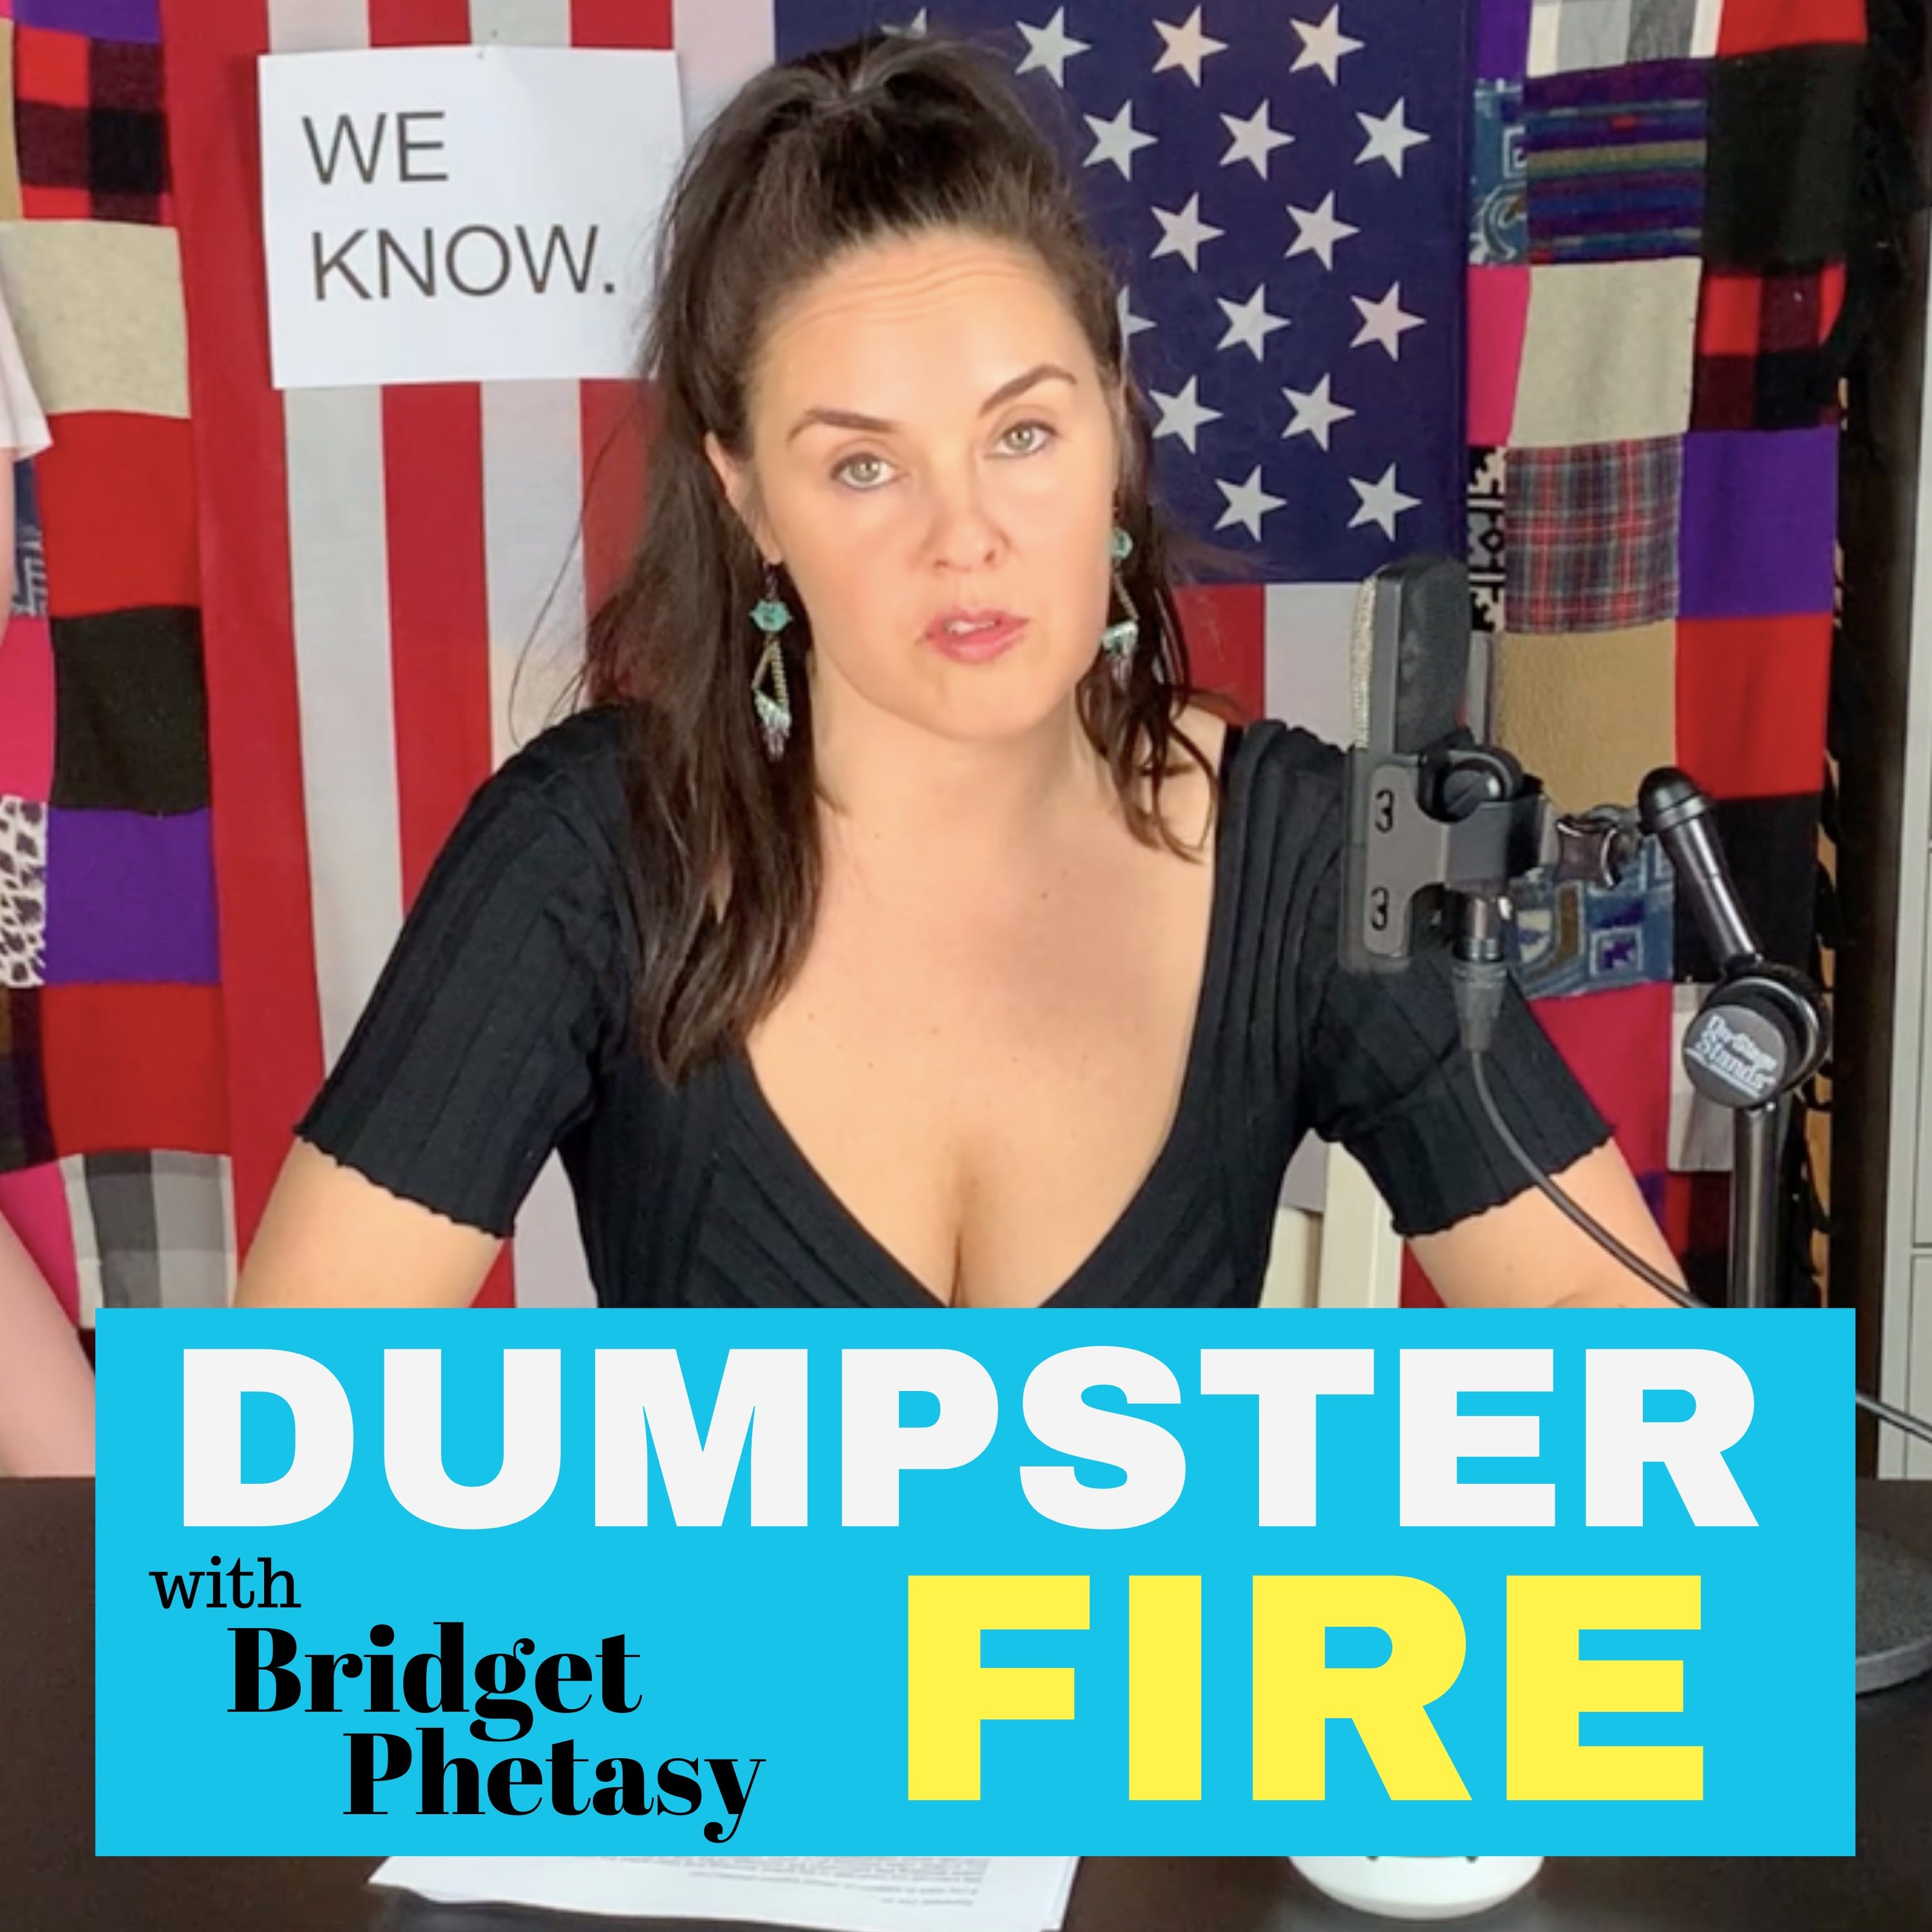 Dumpster Fire 54 - Don't Let Them Divide Us